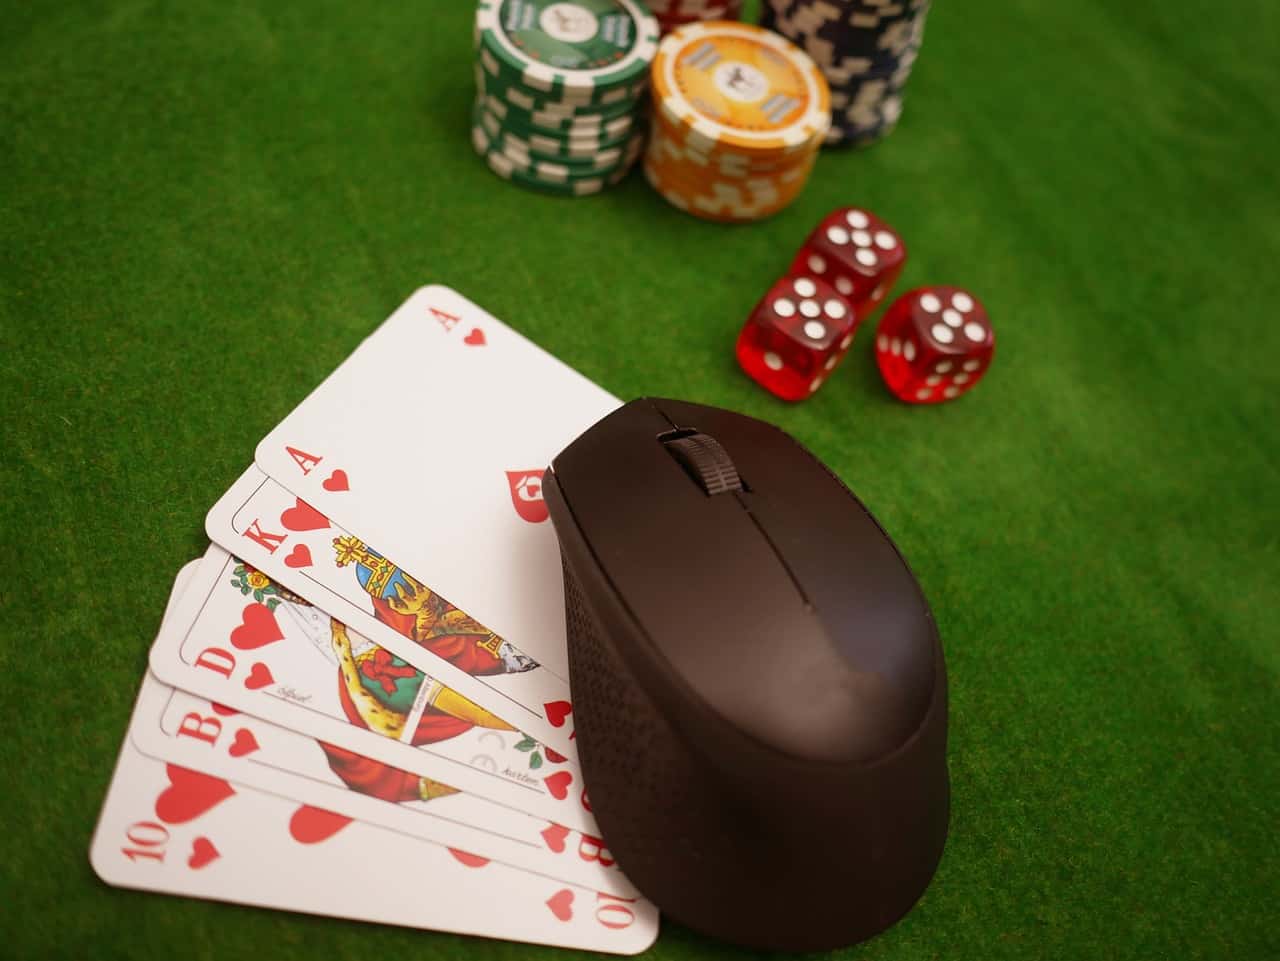 grosse-online-casino-spiele-zur-verbesserung-ihres-gedaechtnisses